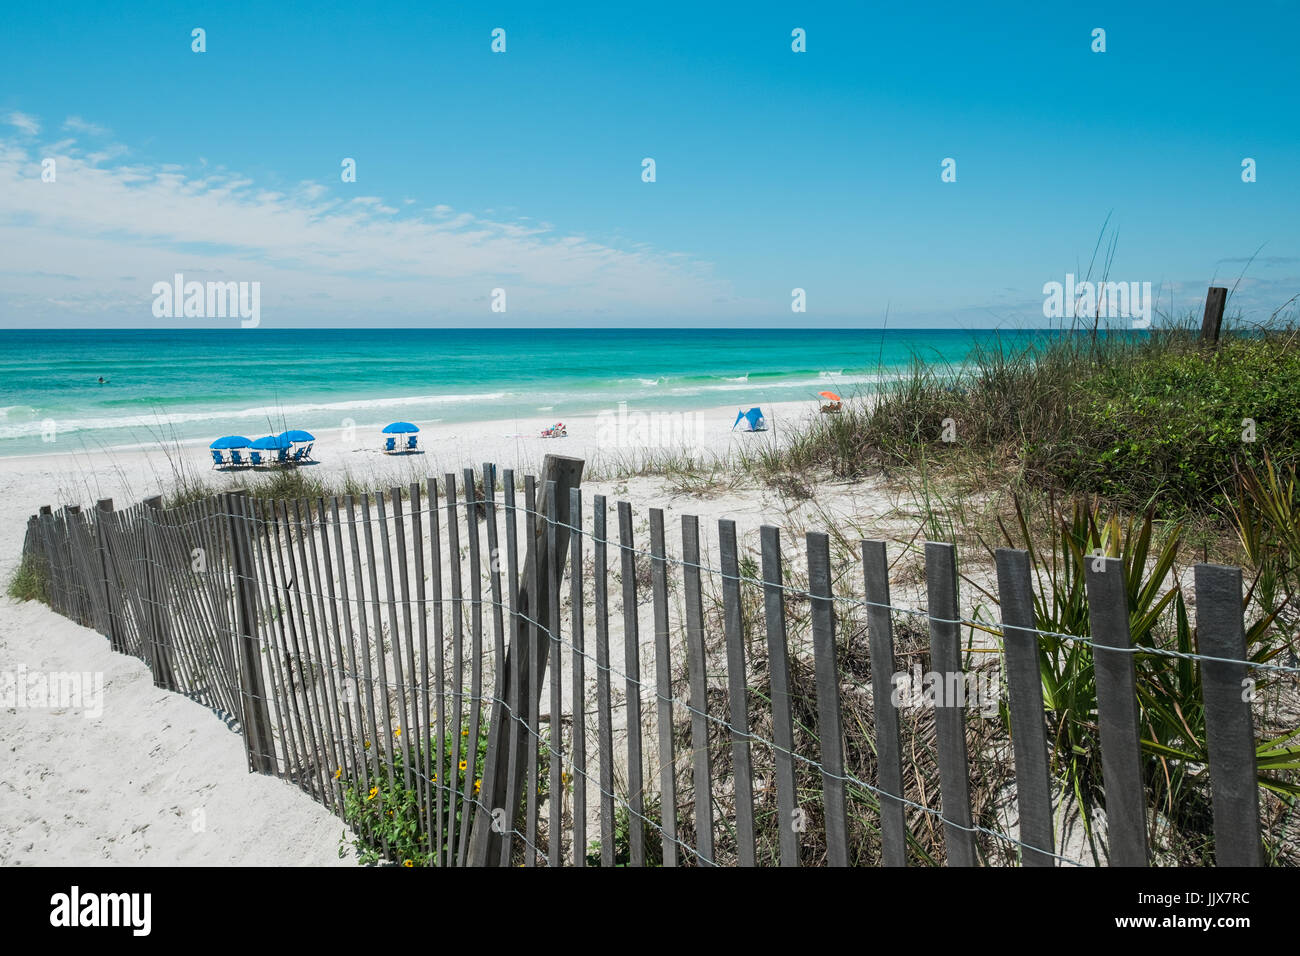 La sabbia bianca e le dune protette dal mare di avena salutare le famiglie a Destin popolare spiaggia, mare, sulla costa del Golfo della Florida, Stati Uniti d'America. Foto Stock